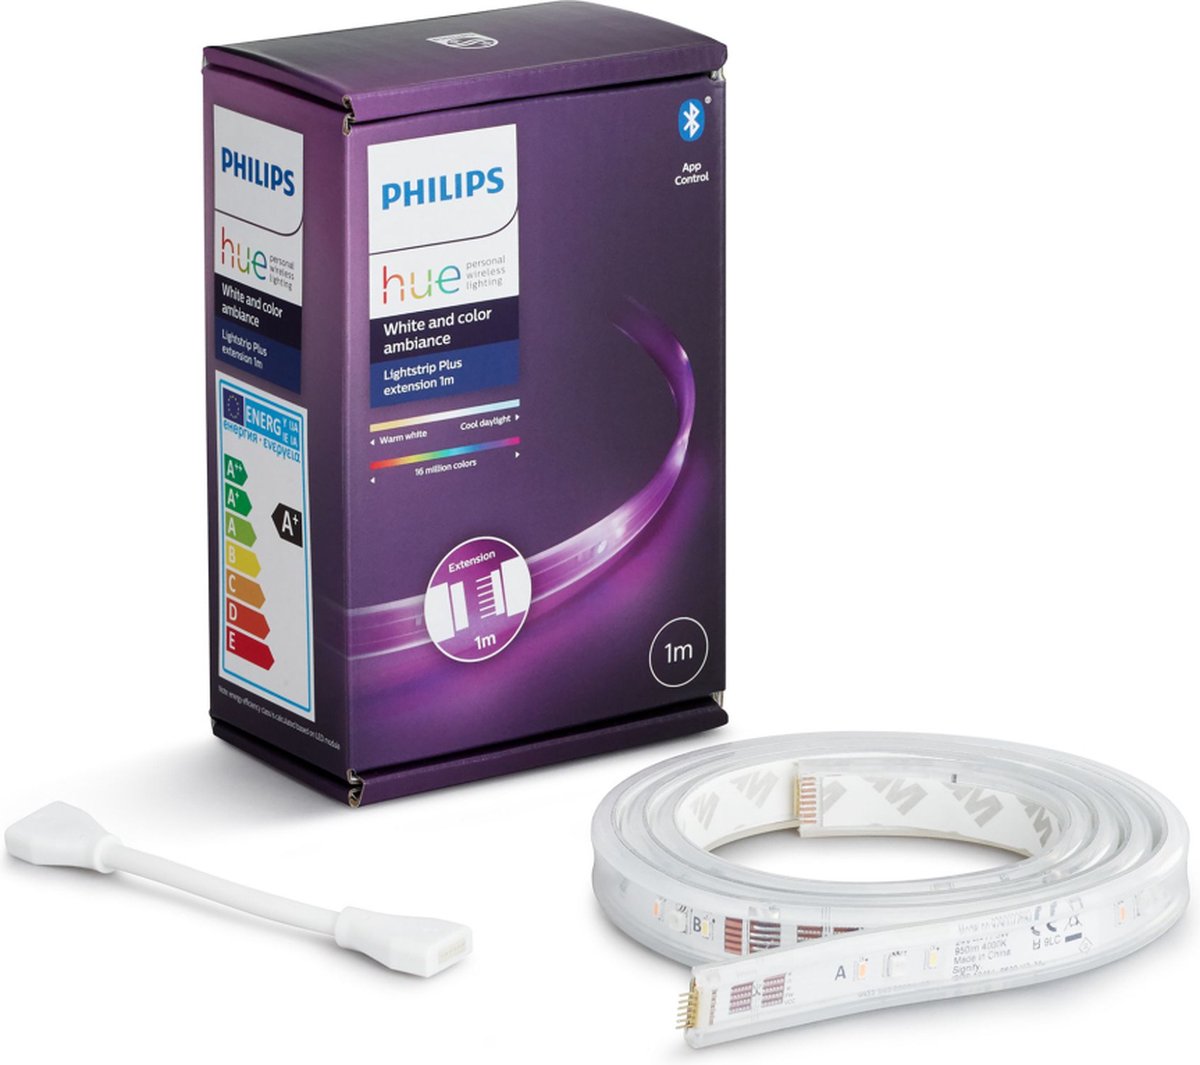 Misleidend sector Maken Philips Hue Lightstrip Plus uitbreiding 1 meter - Wit en gekleurd licht -  Wit - 11,5W... | bol.com